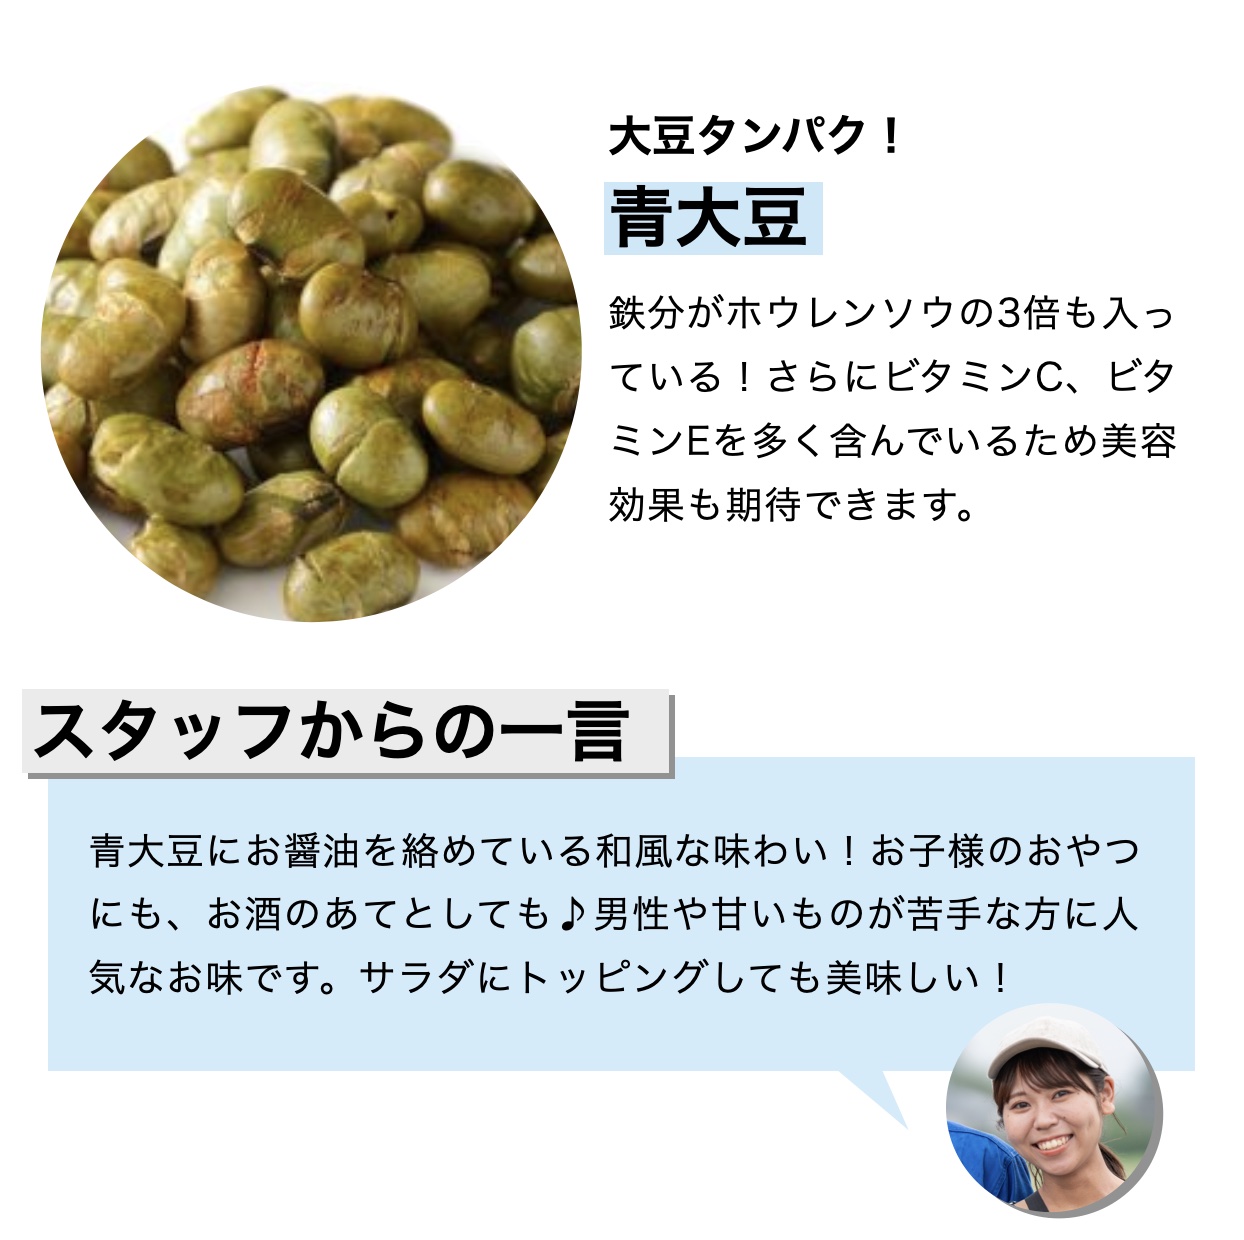 おきかえナッツ「たんぱくしっつ」に入っている青大豆にタンパク質が多く含まれていることを説明しているイメージ